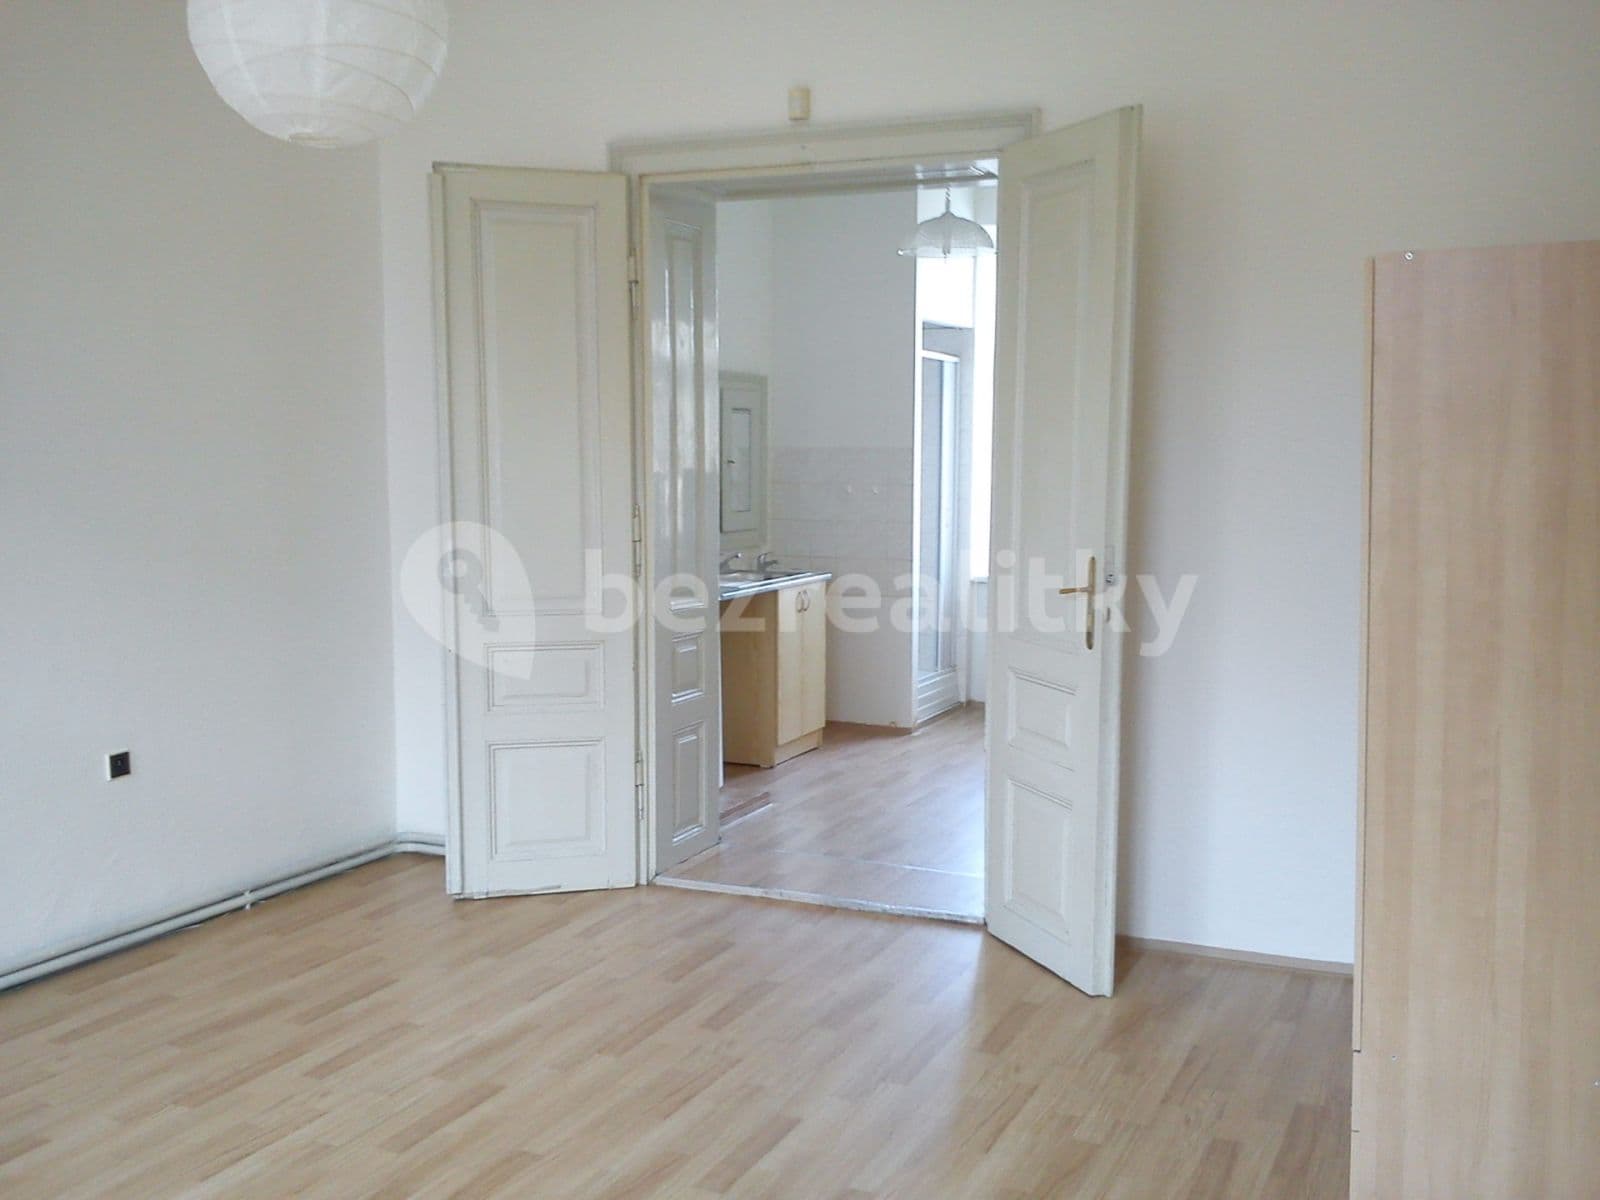 1 bedroom flat to rent, 34 m², Palackého třída, Brno, Jihomoravský Region